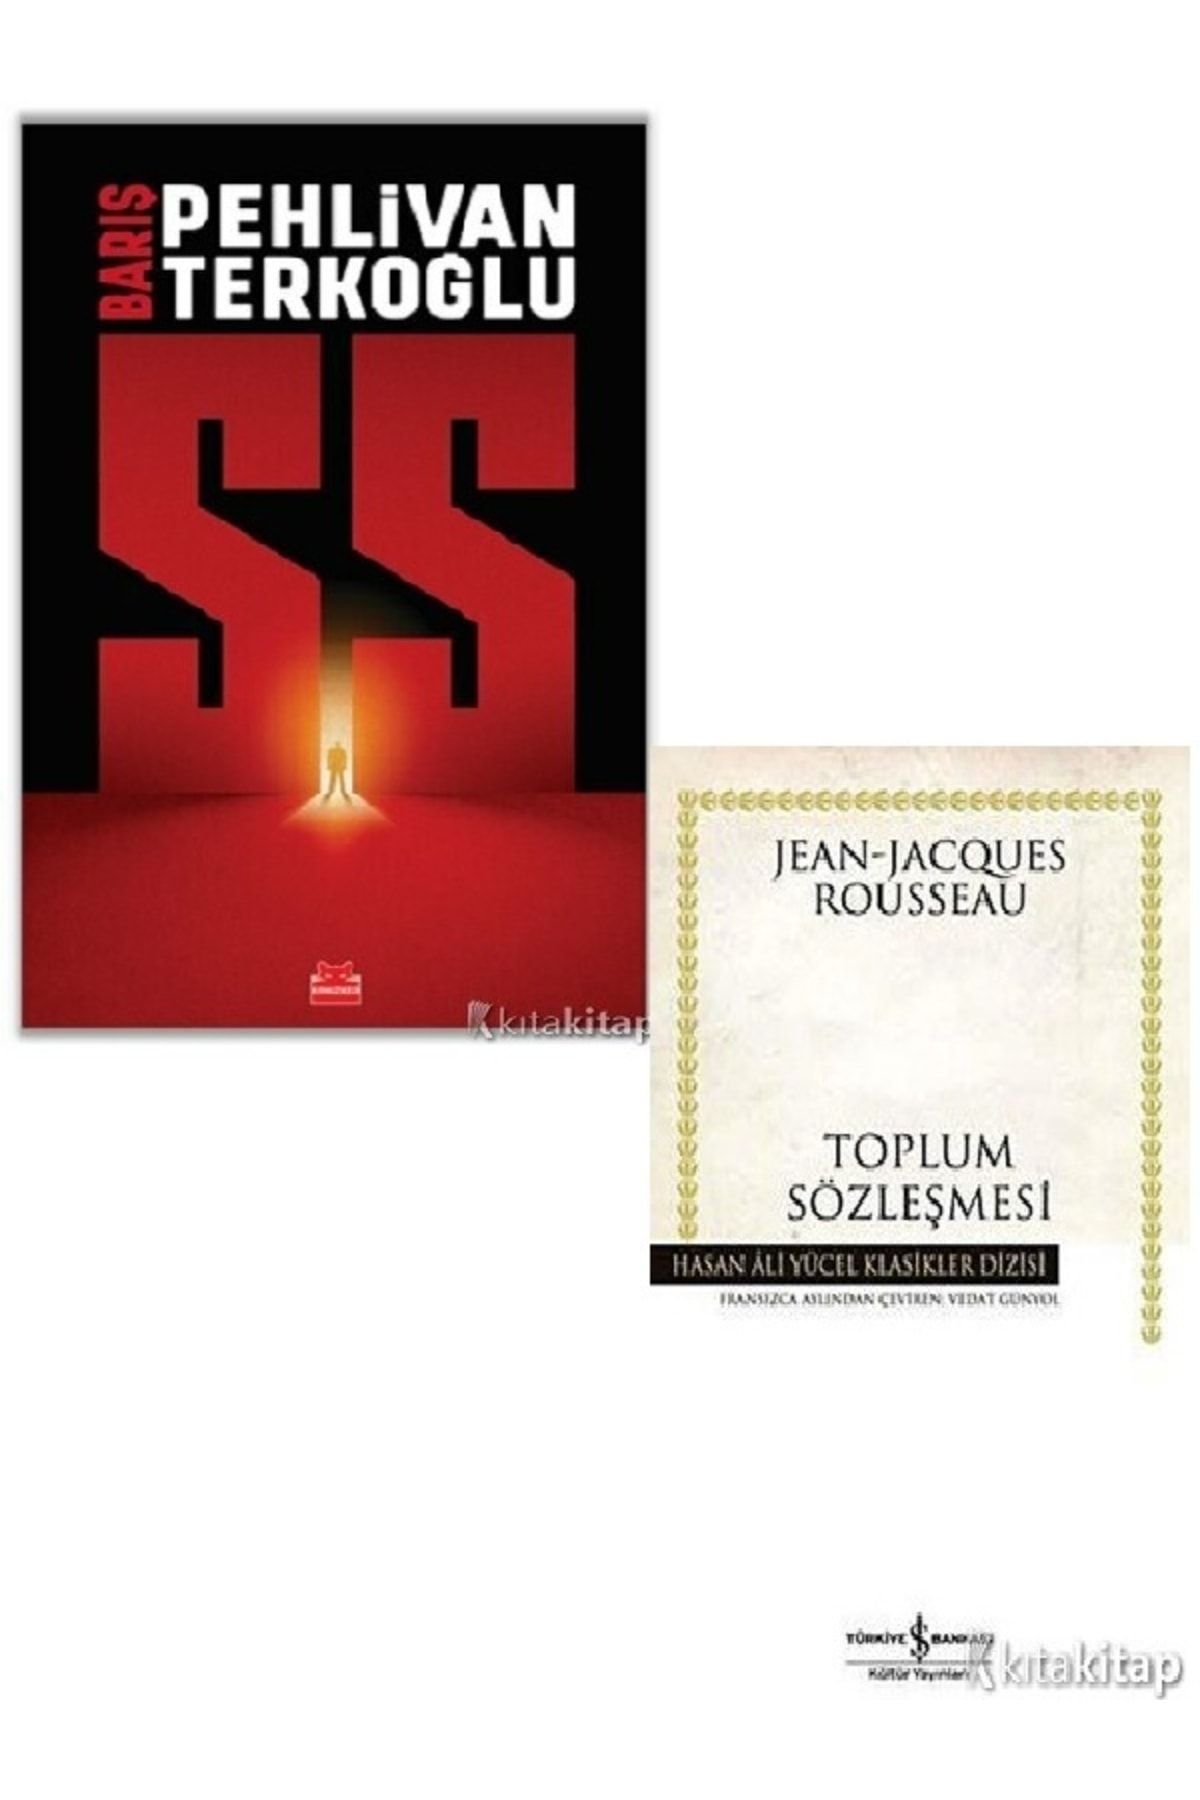 Karakarga Yayınları Ss - Toplum Sözleşmesi - Barış Pehlivan & Barış Terkoğlu - Jean Jacques Rousseau 2 Kitap Set